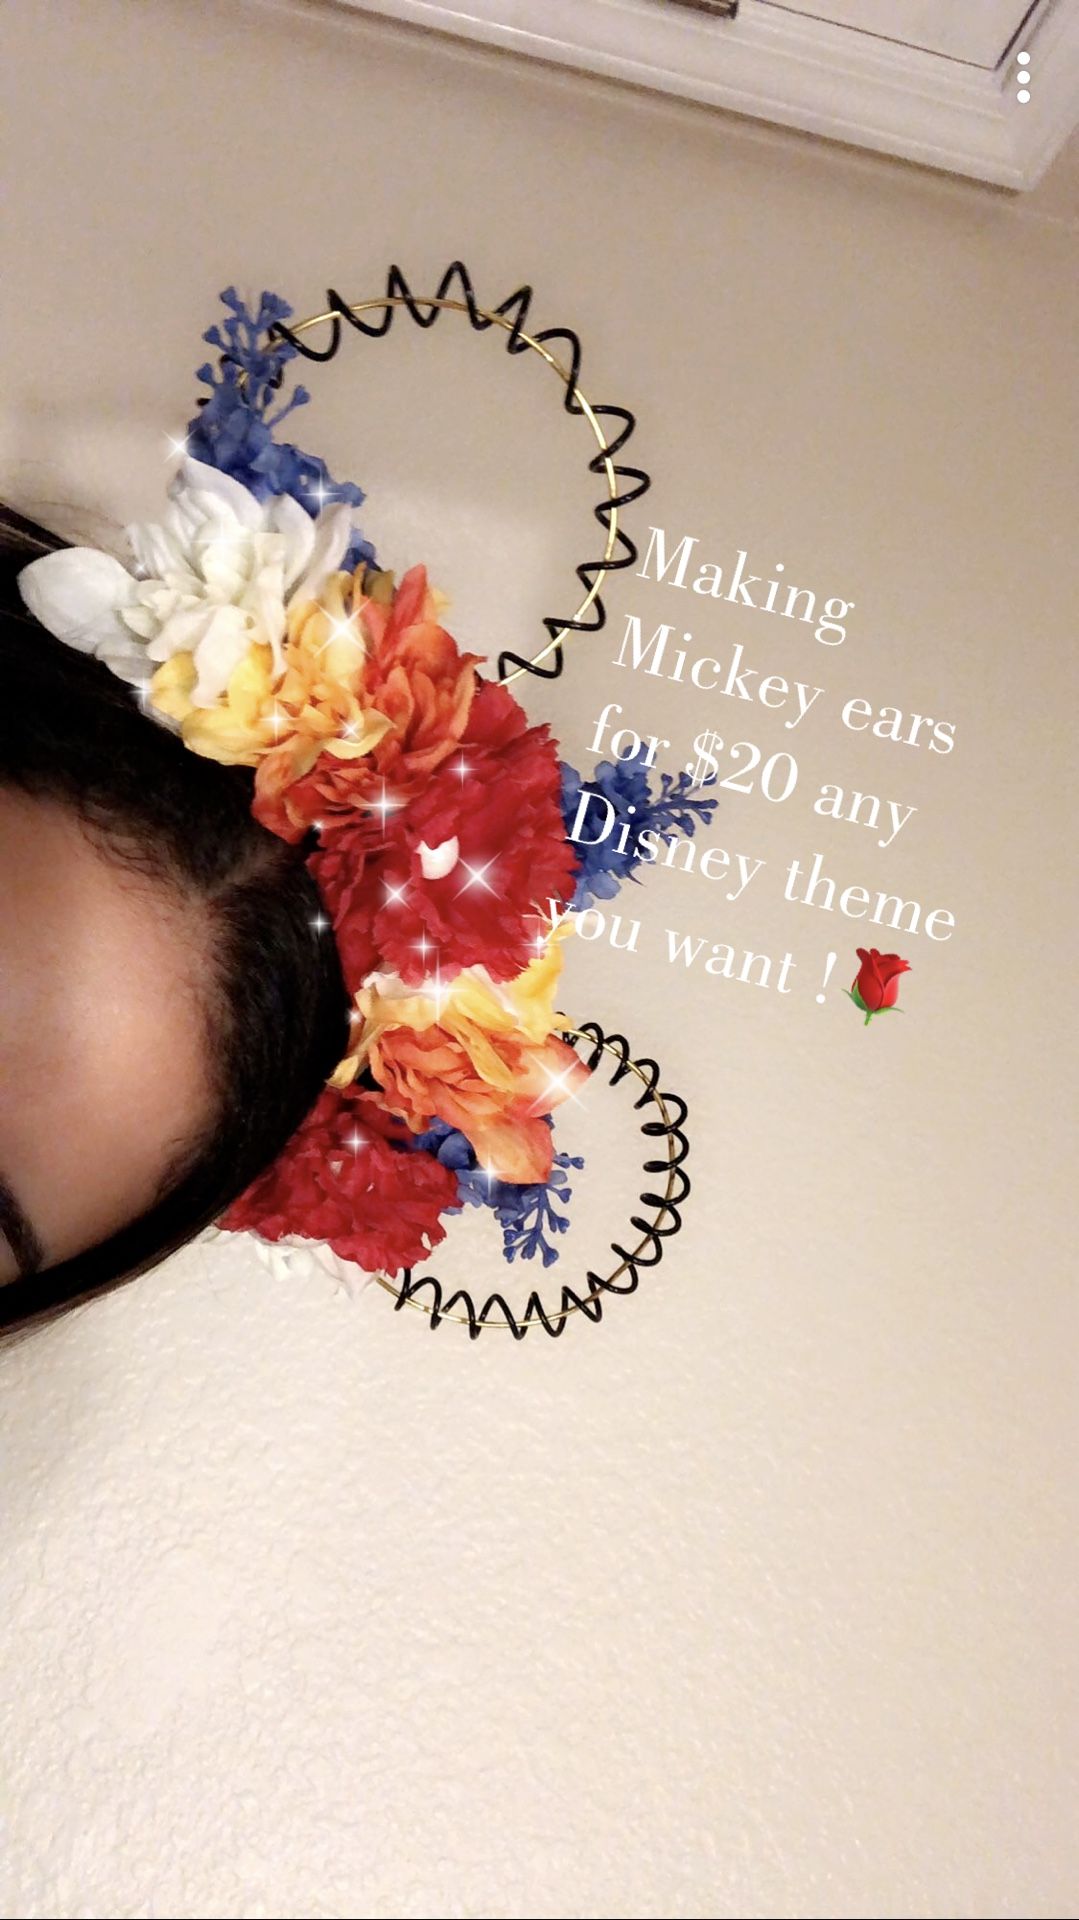 Wire Mickey ears